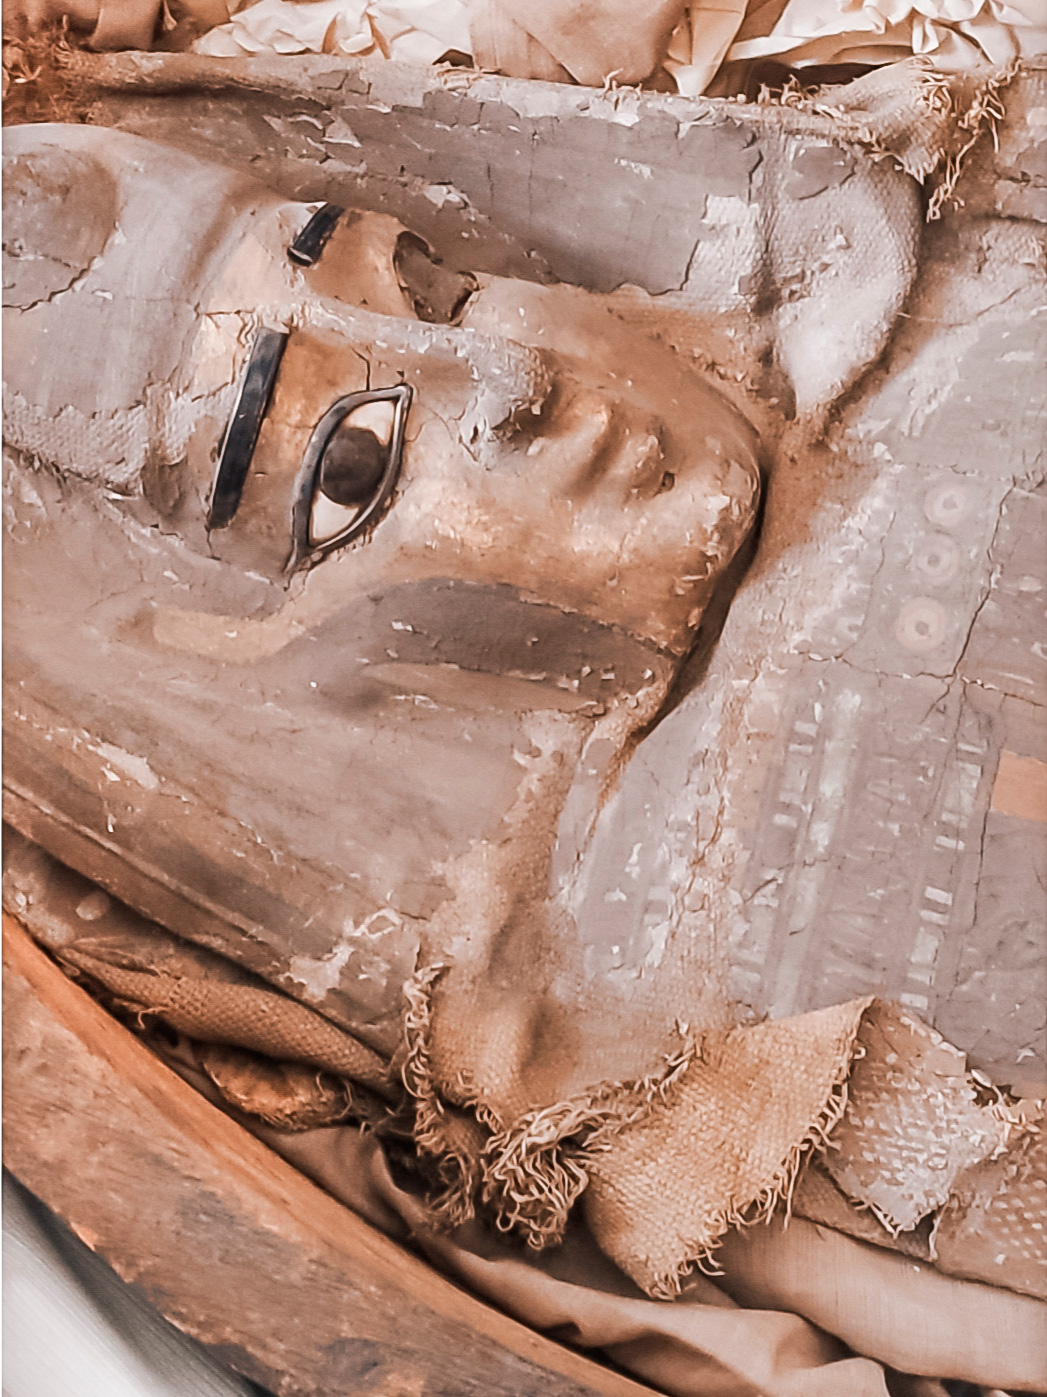 В мастерскую поступили на реставрацию две египетские мумии